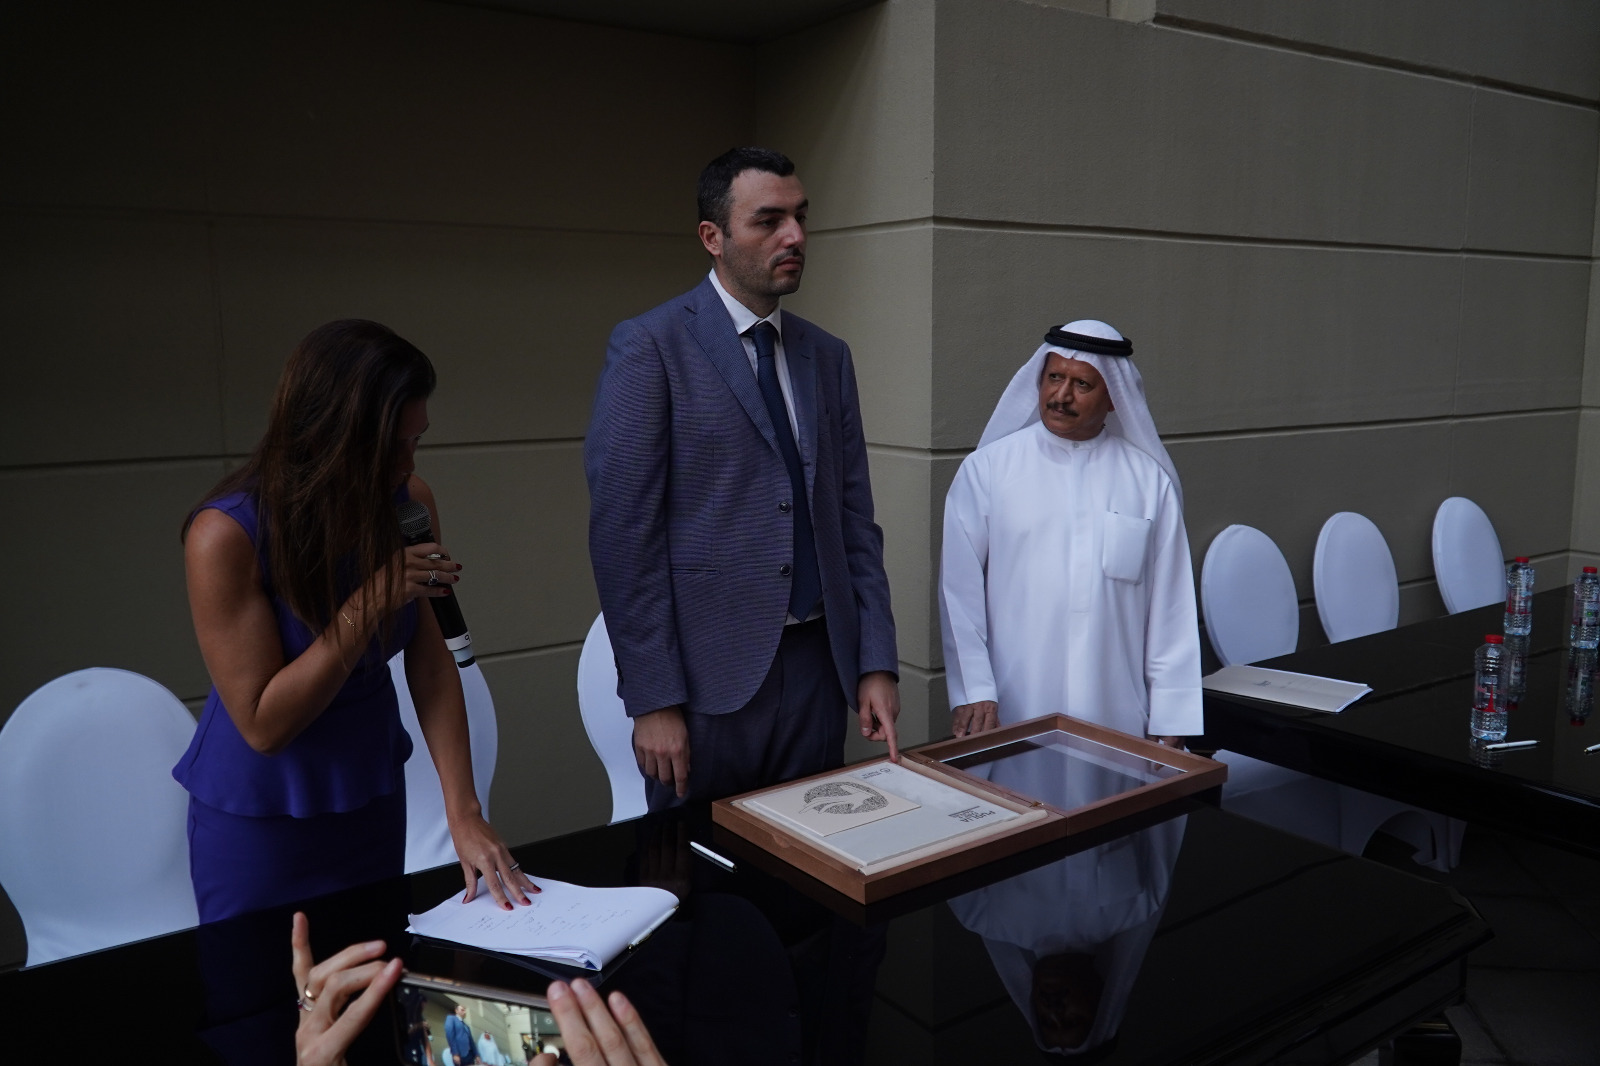 Galleria Delli Noci: “Oggi abbiamo sottoscritto importanti accordi internazionali risultato tangibile della missione istituzionale a Dubai dello scorso ottobre” - Diapositiva 2 di 11